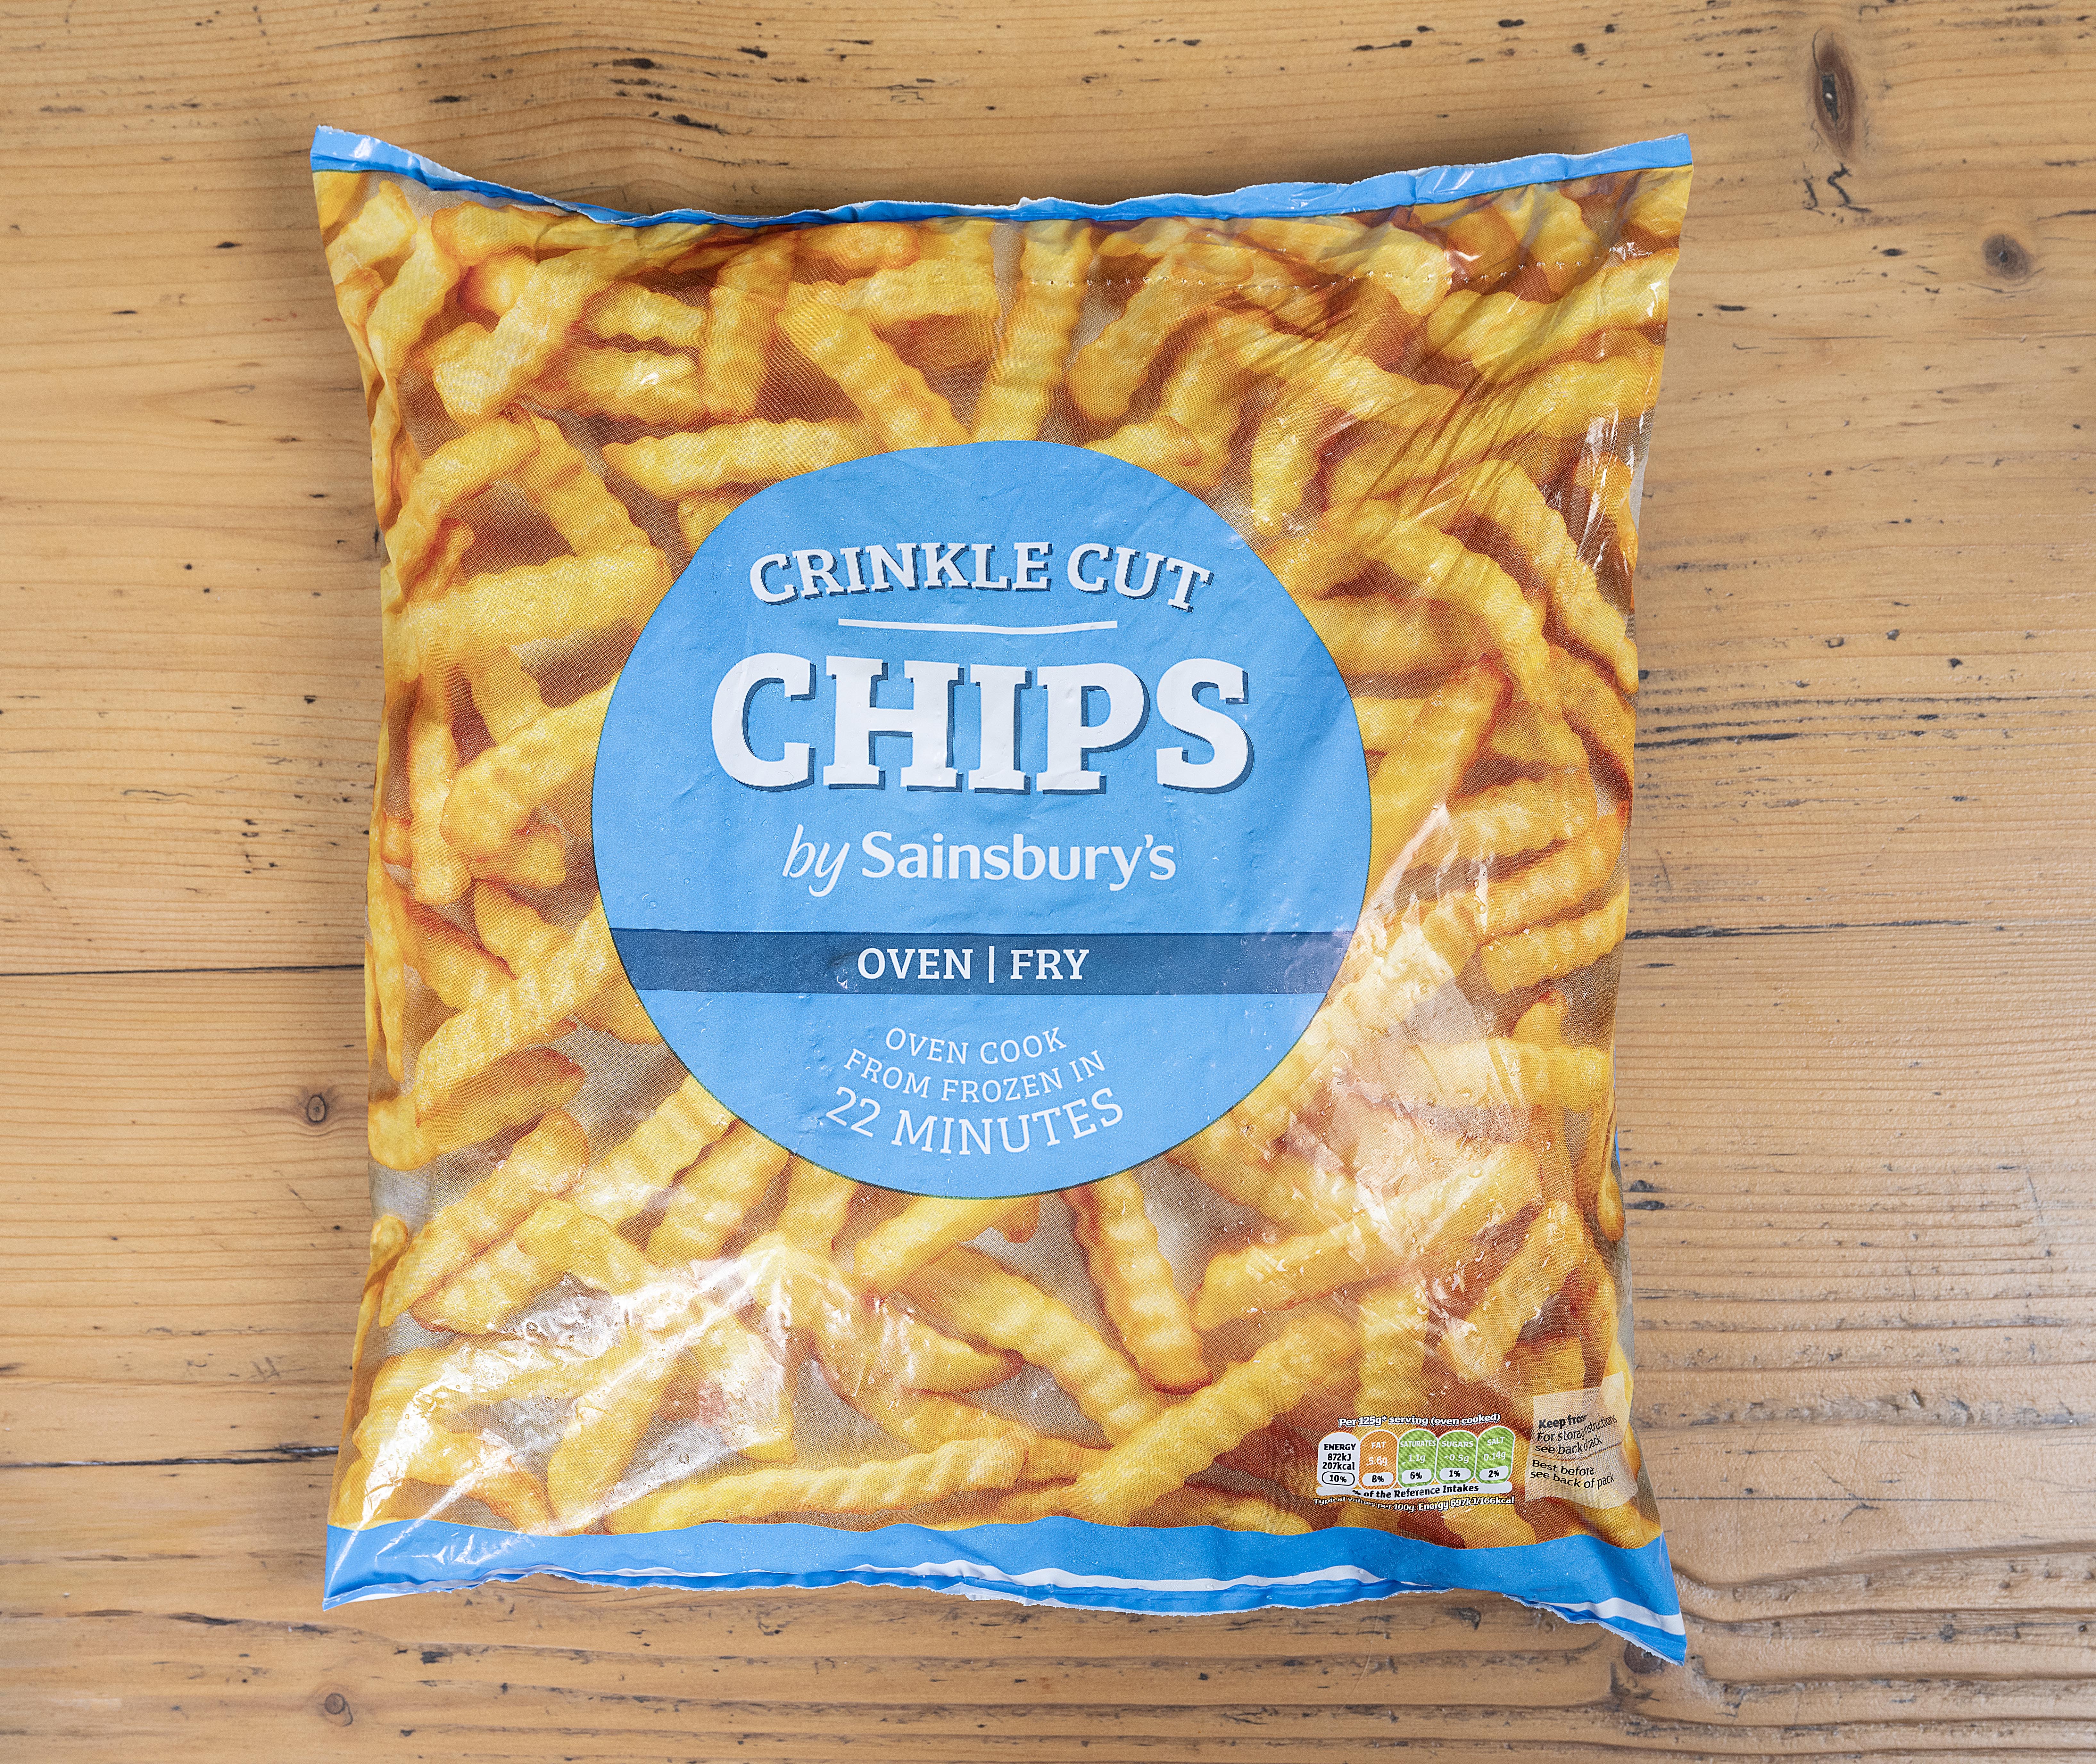 Sainsbury's Crinkle Cut Chips brennen sehr leicht